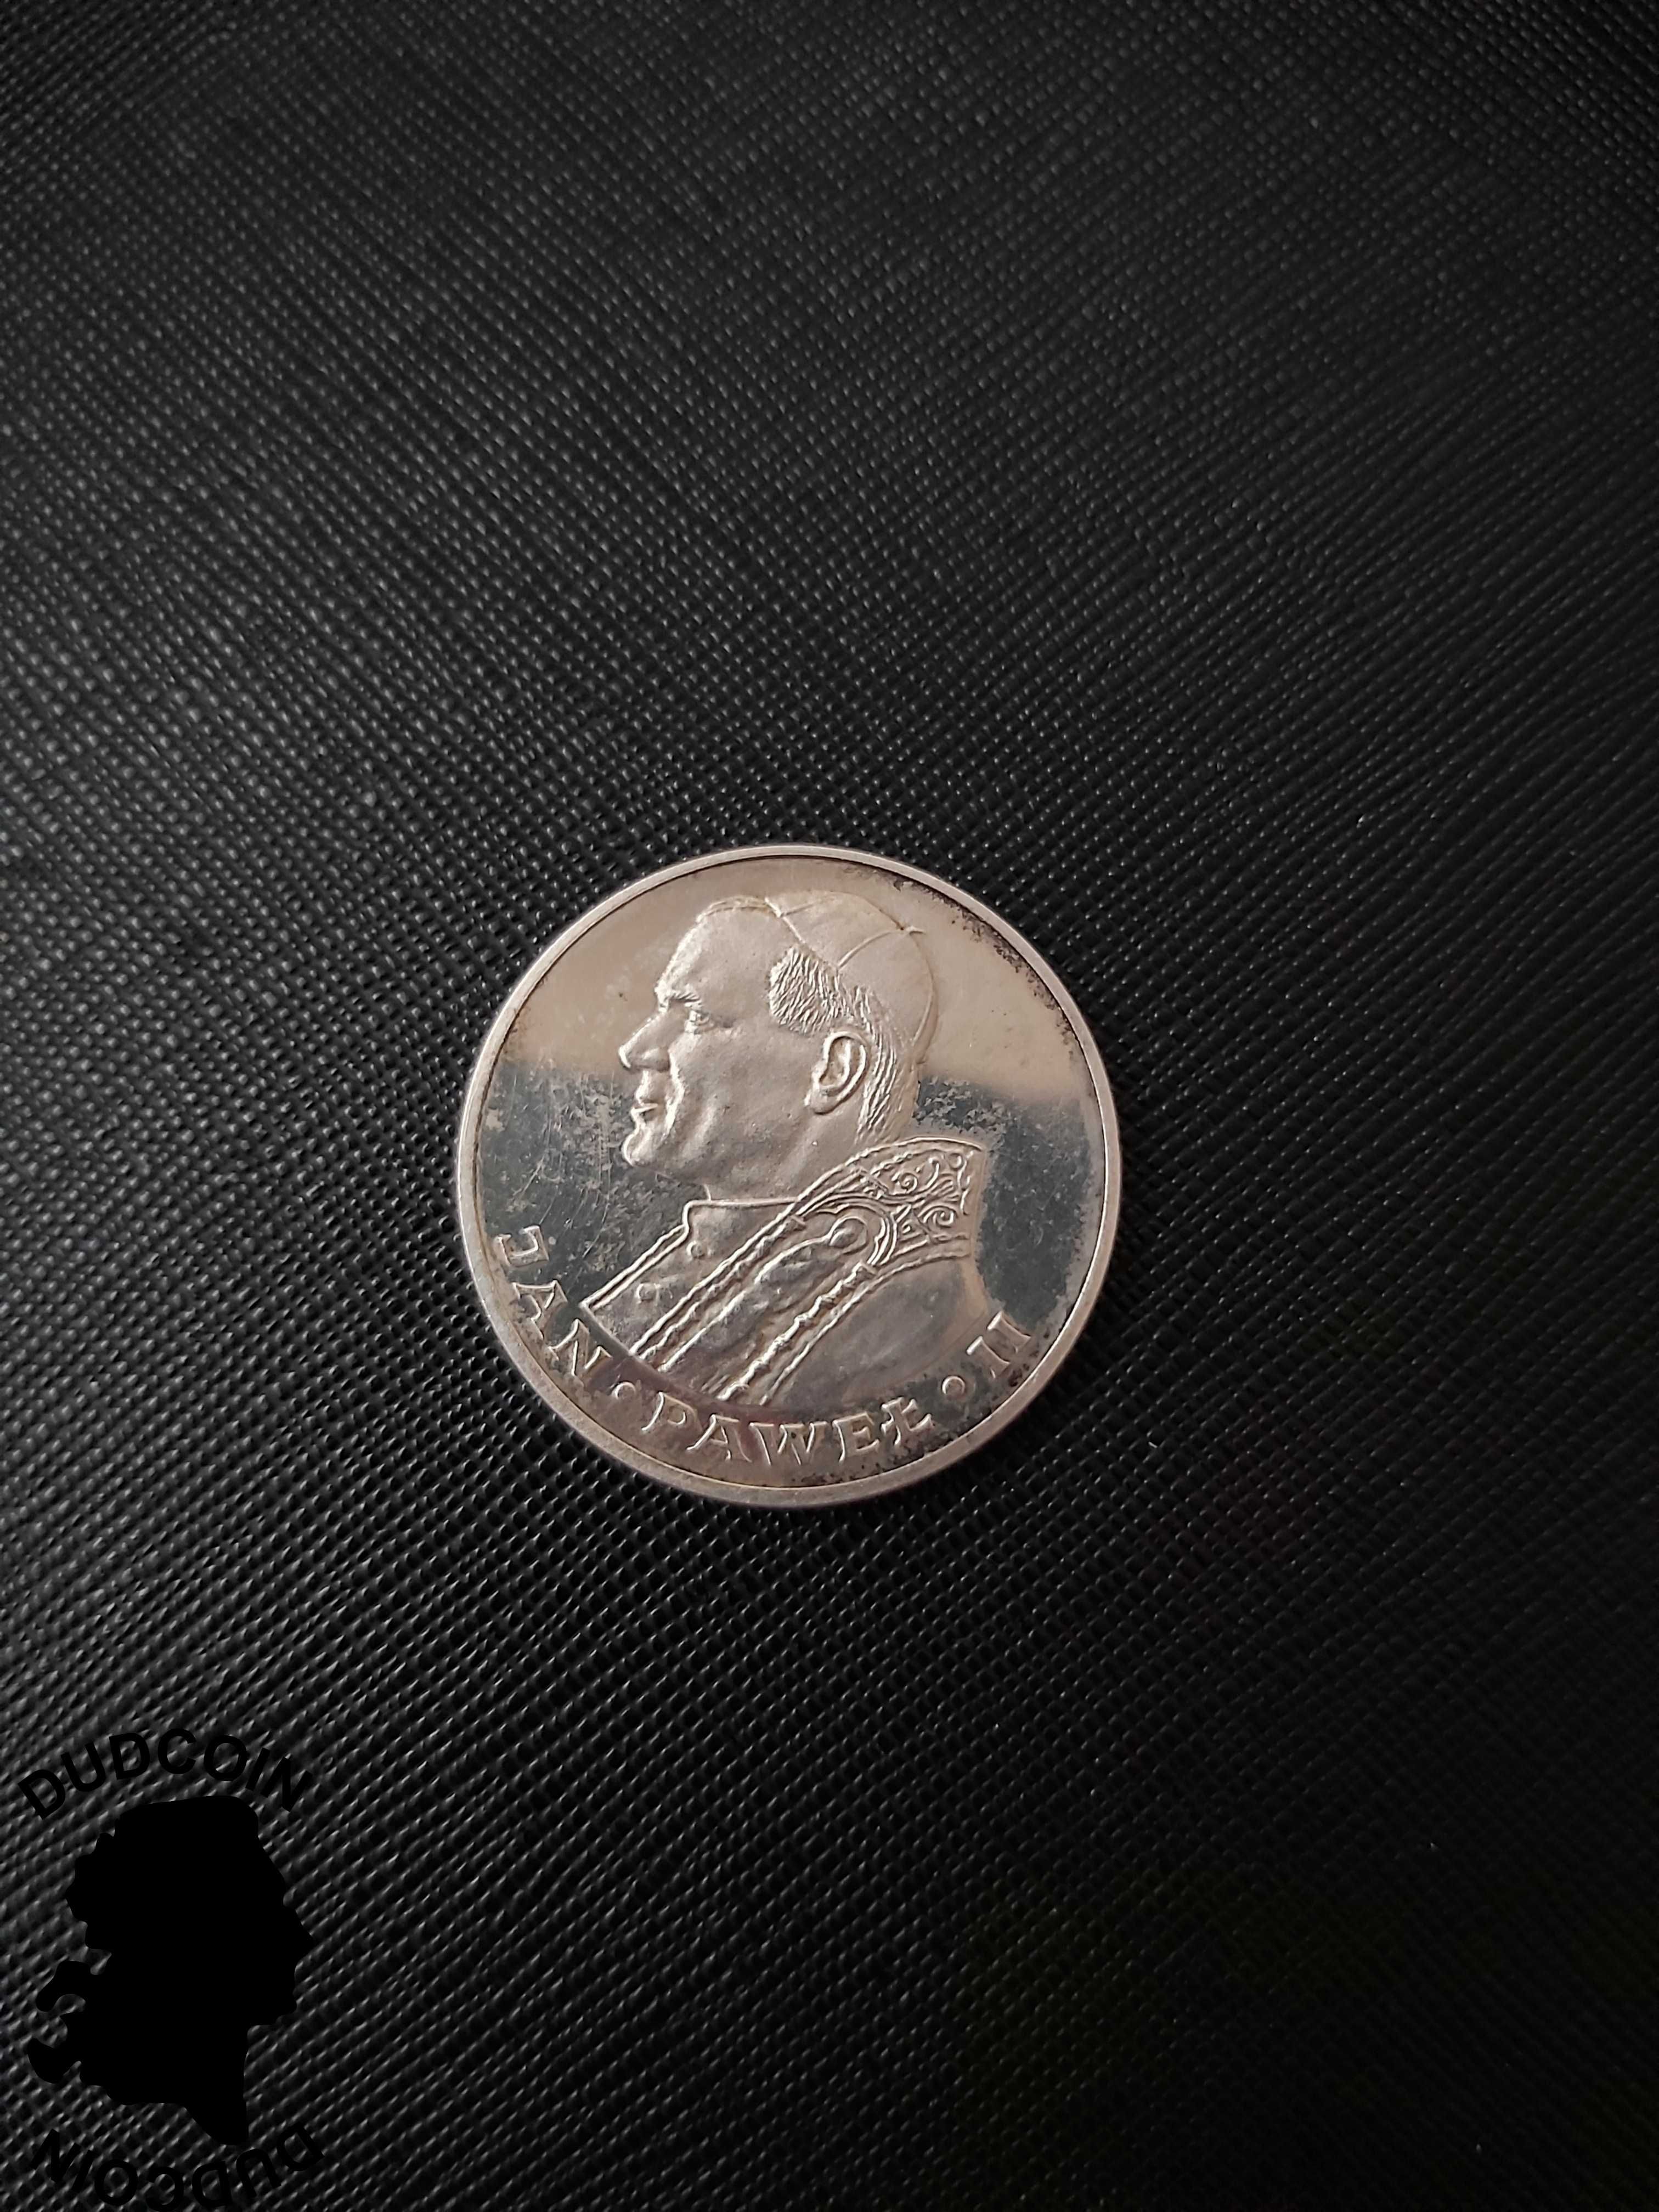 Moneta 1000 zł Papież Jan Paweł II 1983 nakład 5000! LUSTRZANKA